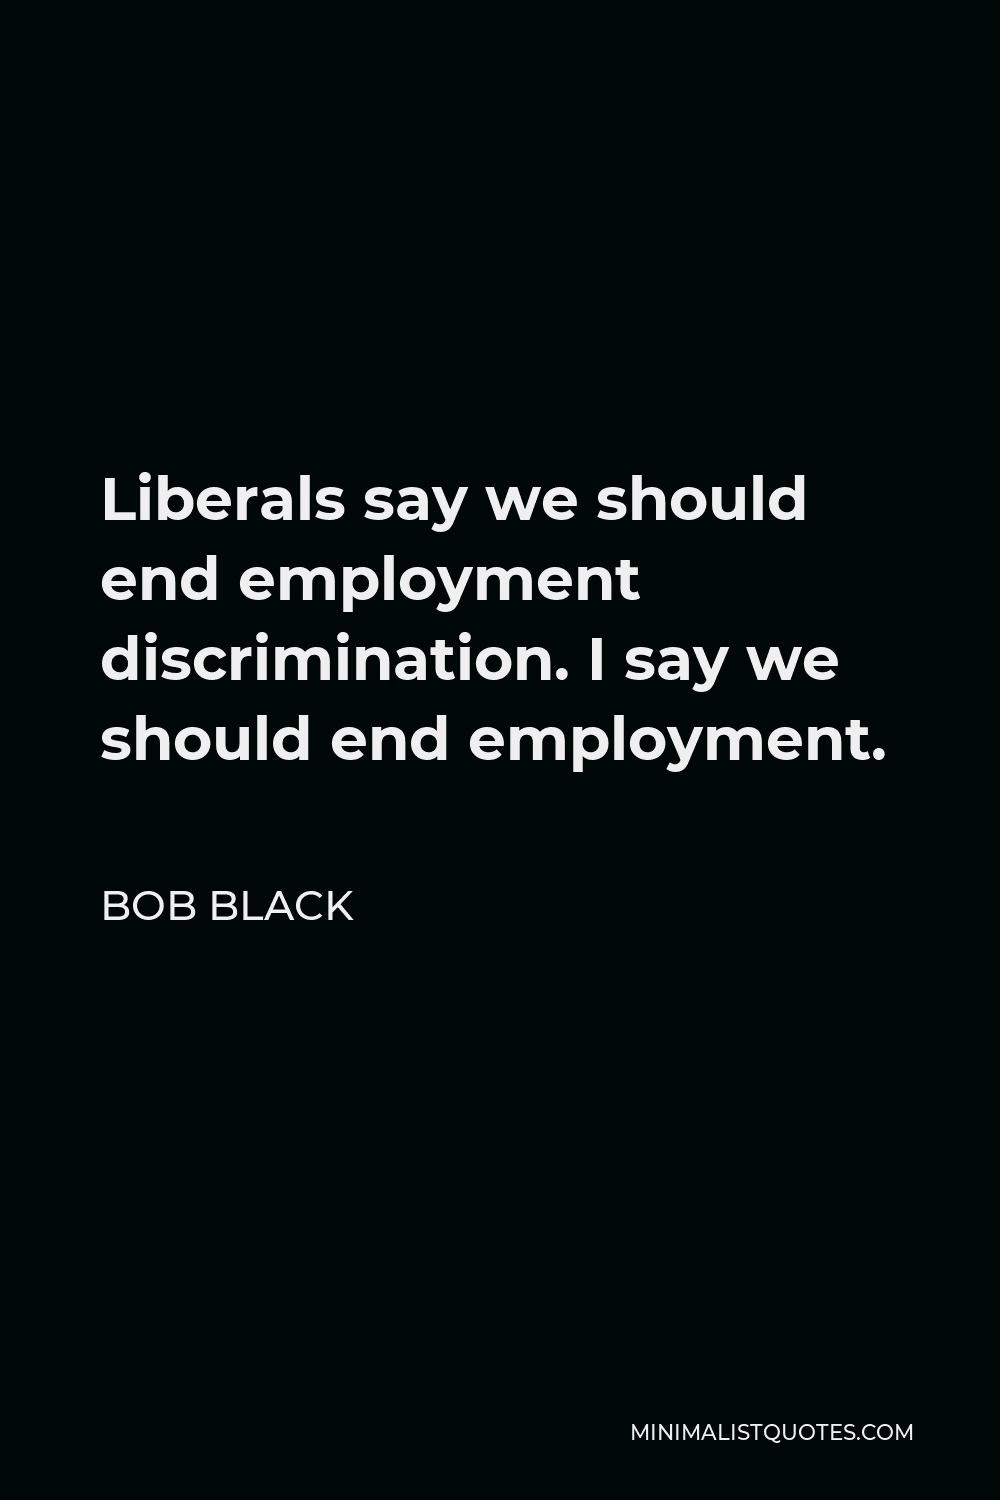 Bob Black Quote - Liberals say we should end employment discrimination. I say we should end employment.